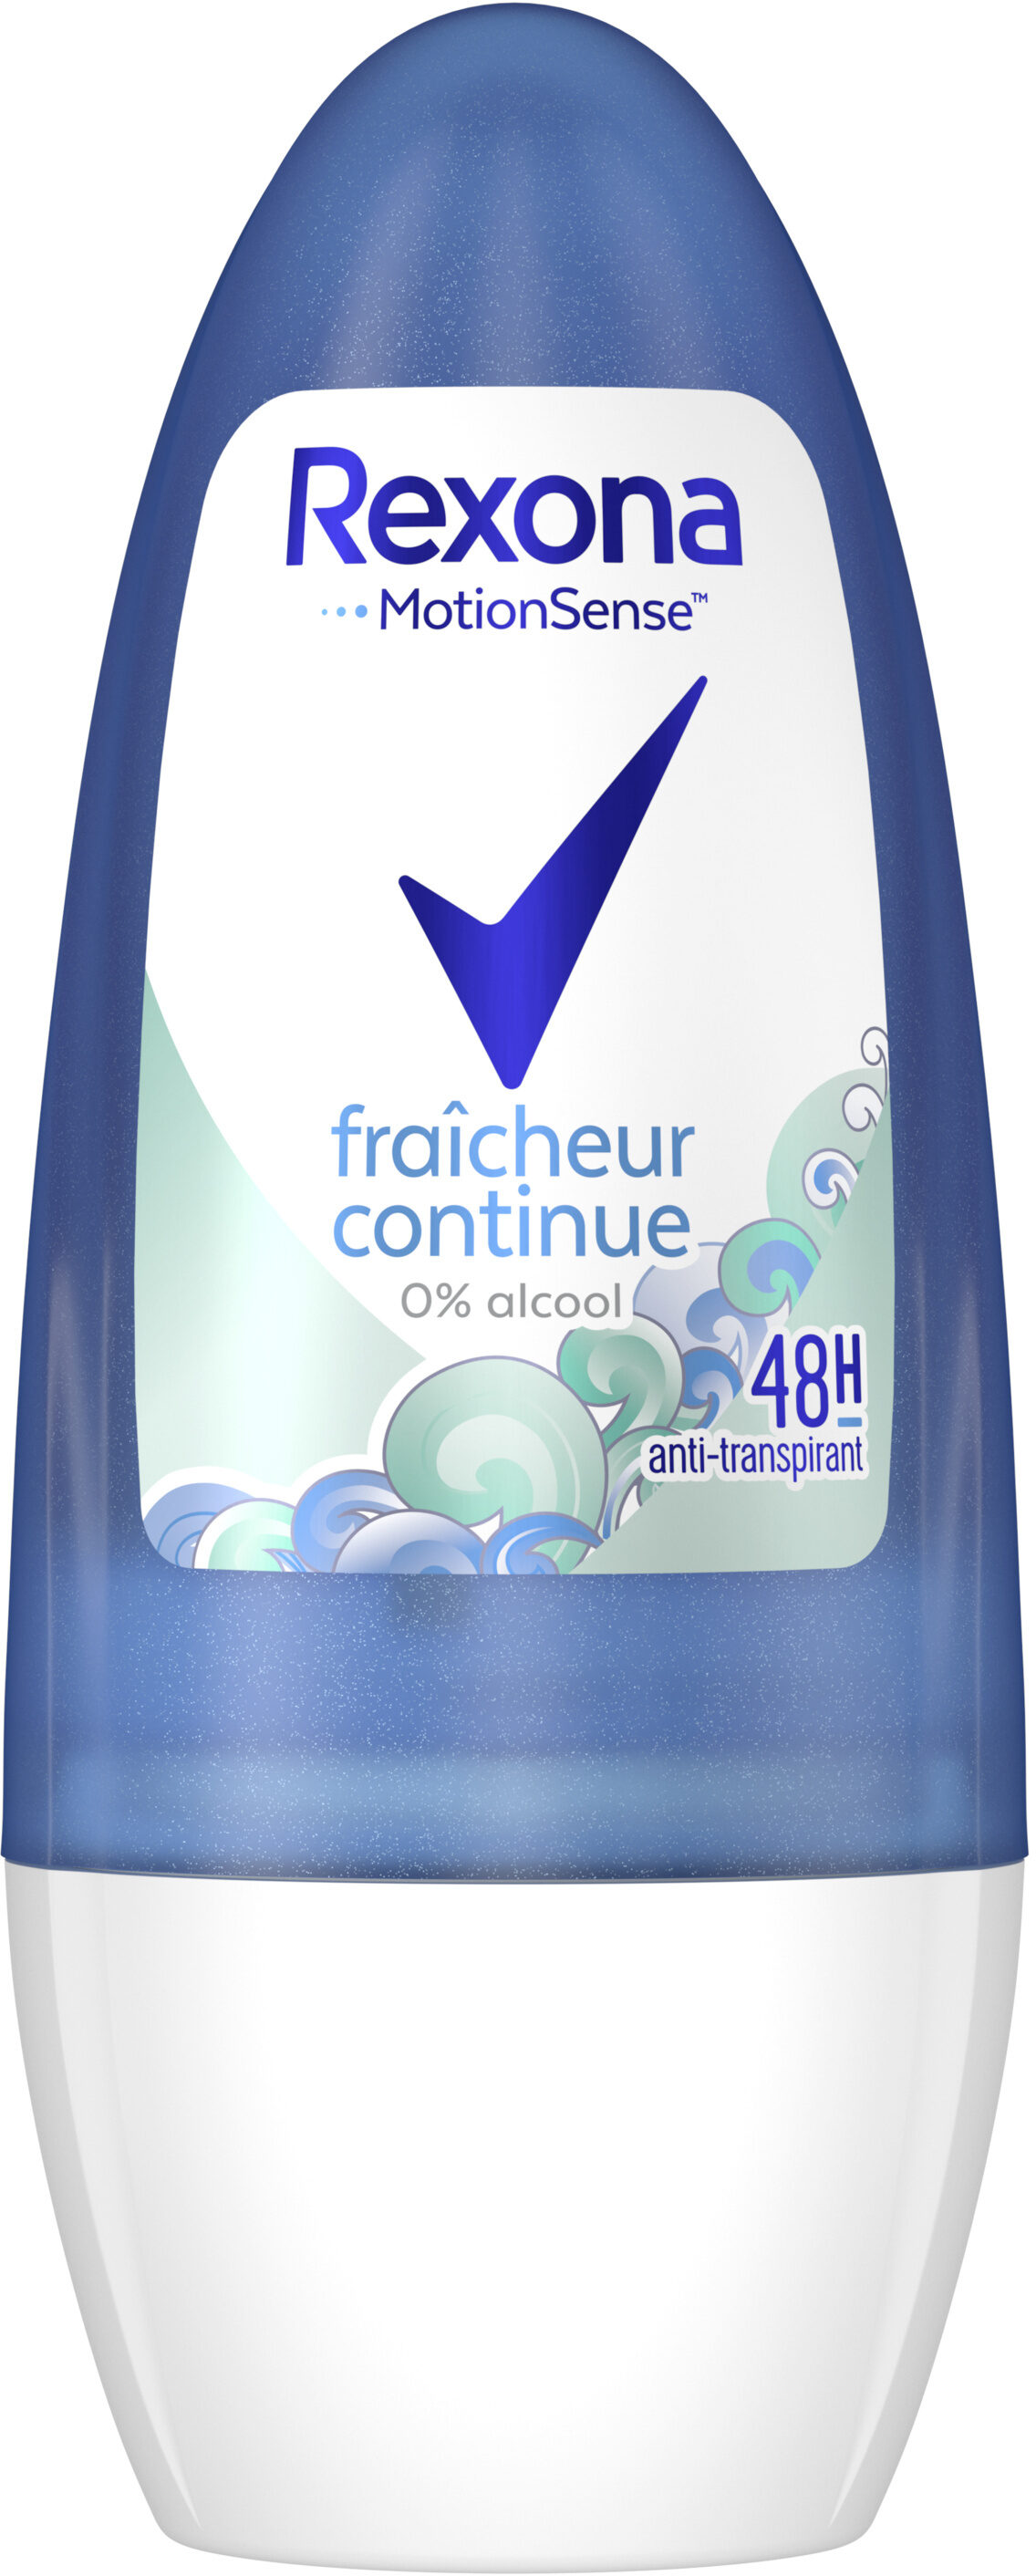 Rexona Déodorant Femme Bille Antibactérien Fraicheur Continue 50ml - Product - fr